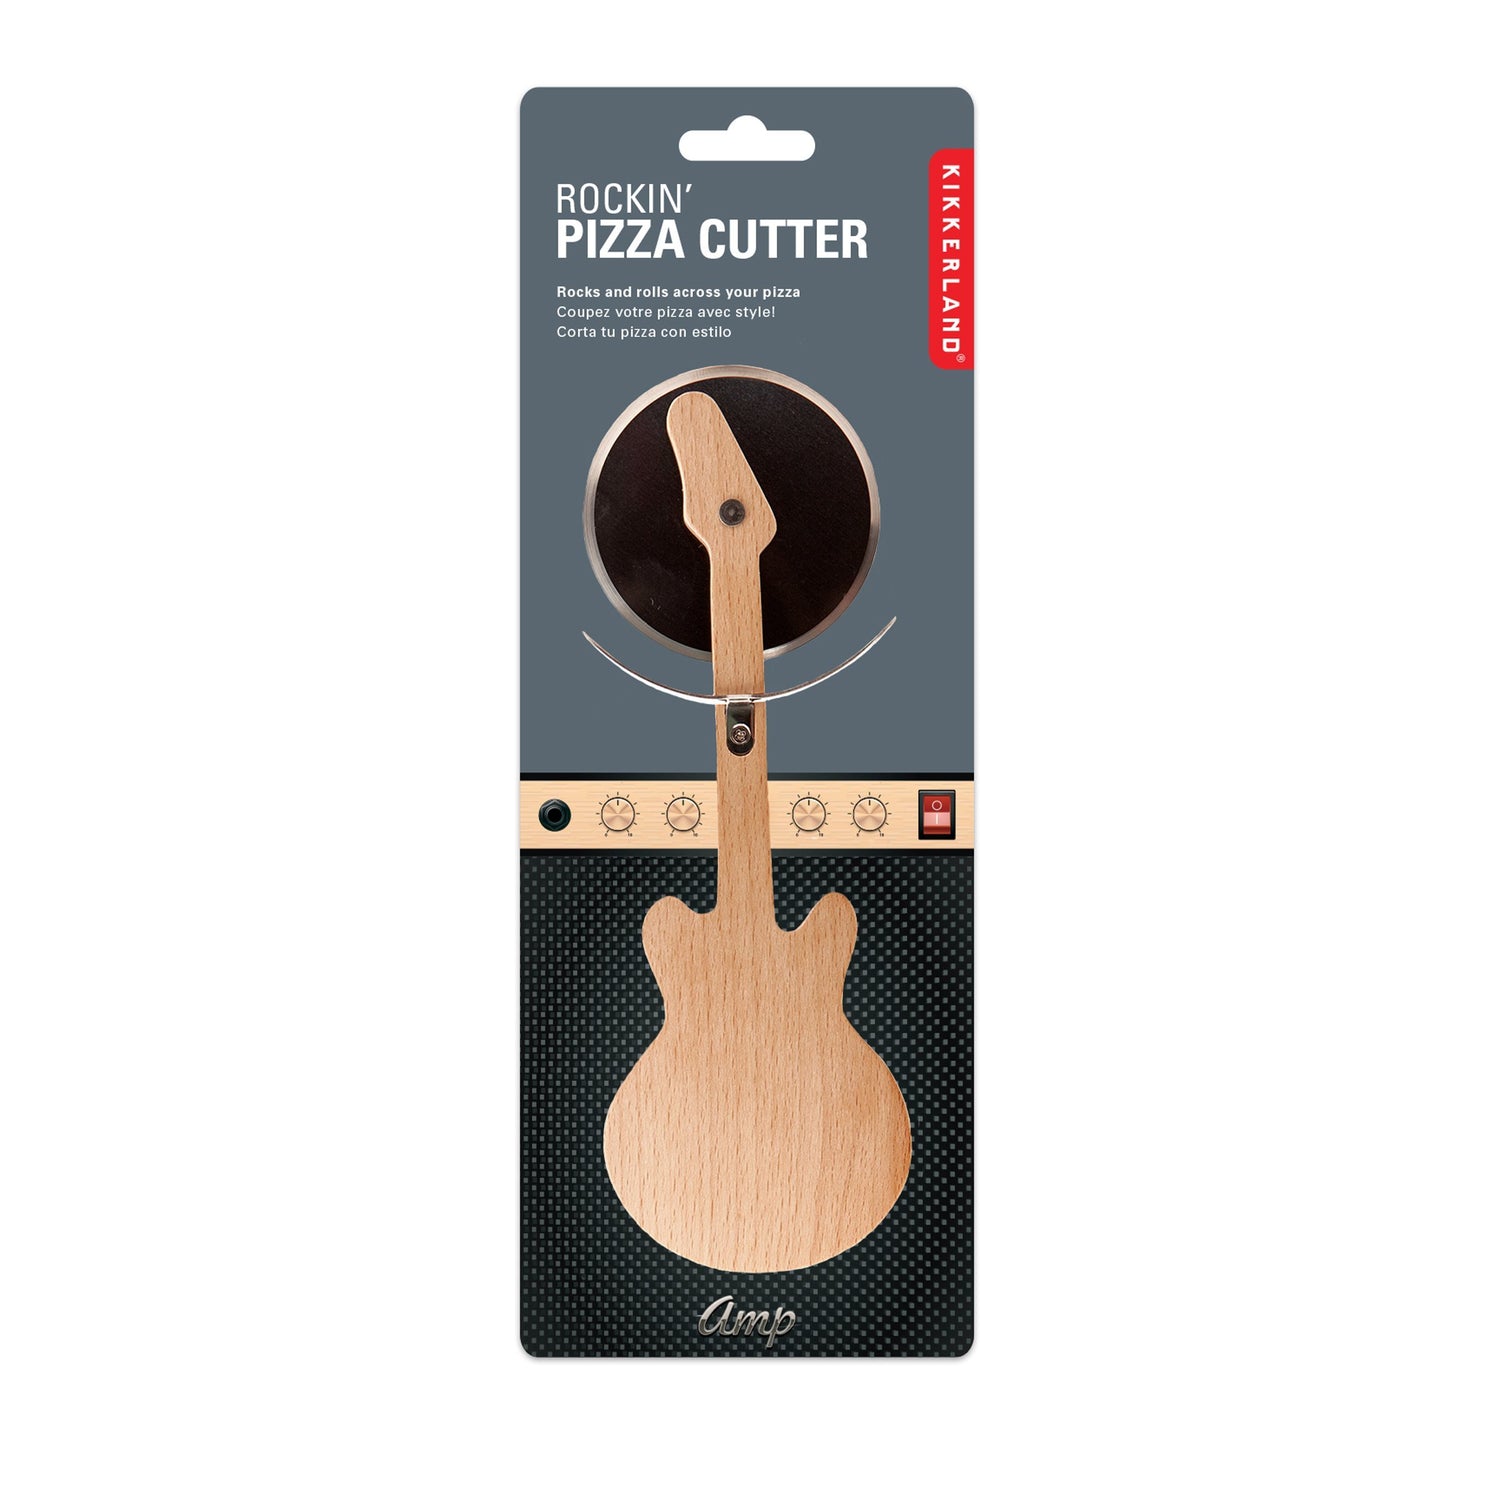 Pizza Cutter guitarra